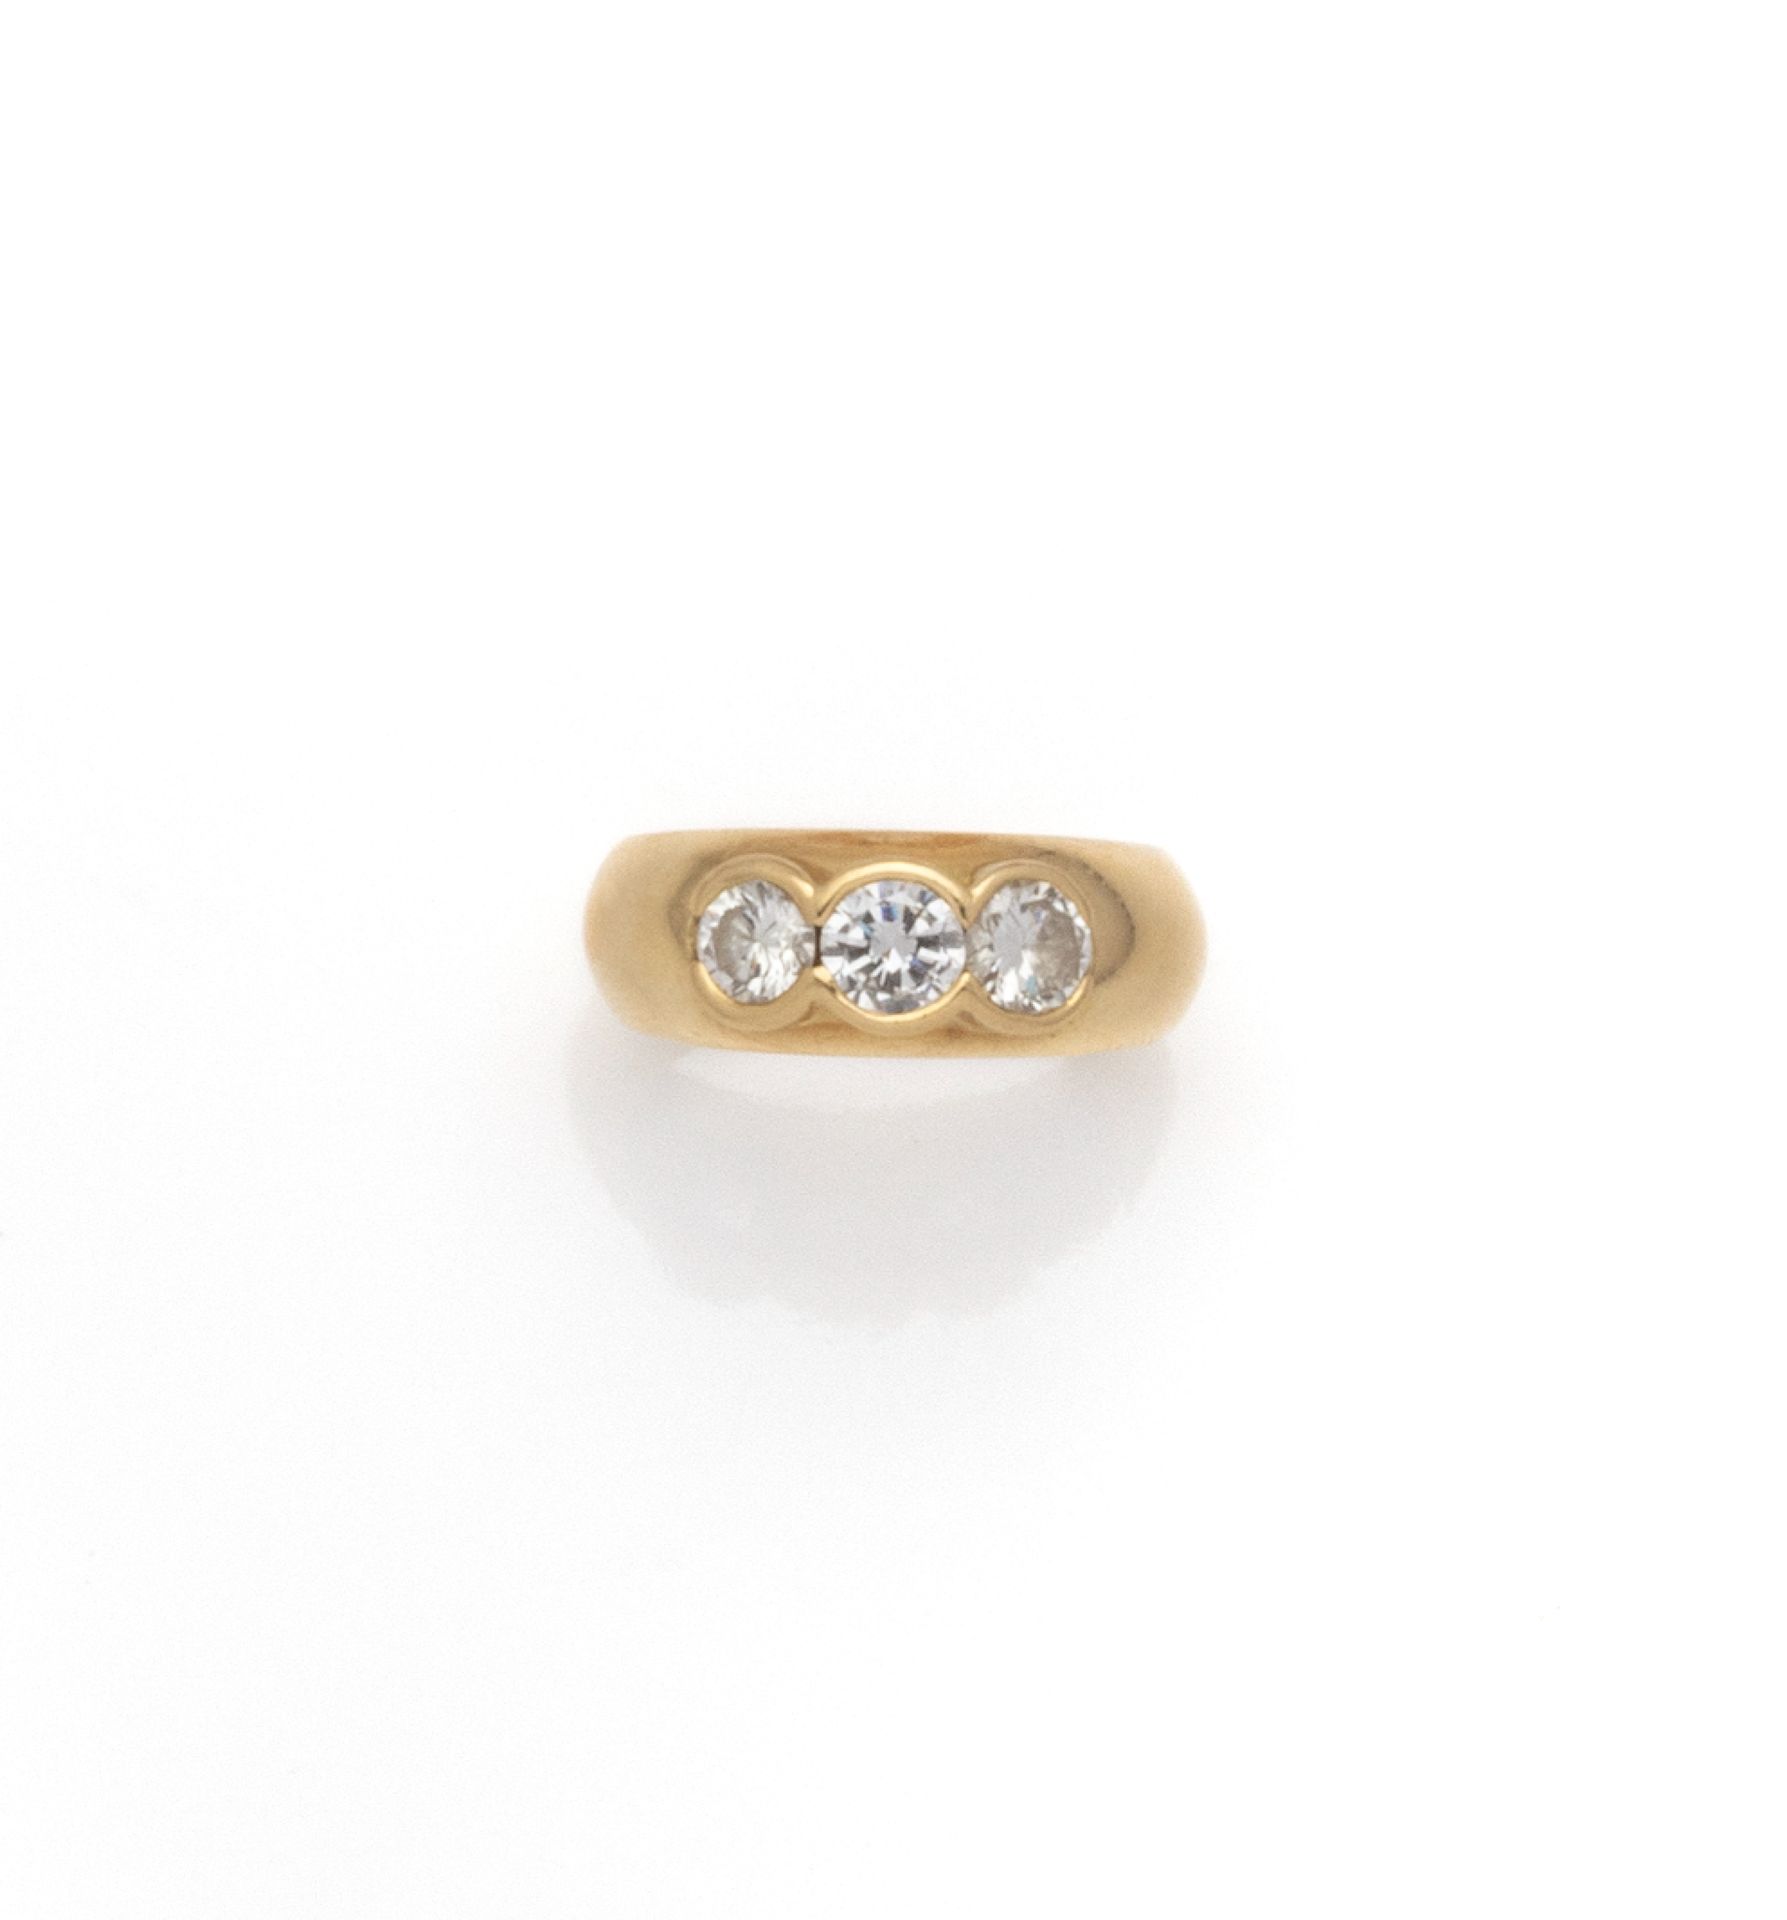 Null 18K（750/1000）黄金戒指，半封闭式镶嵌3颗明亮式切割钻石，总重量约为1.2克拉。

法国的工作。

手指大小：57 - 总重量：8.58克